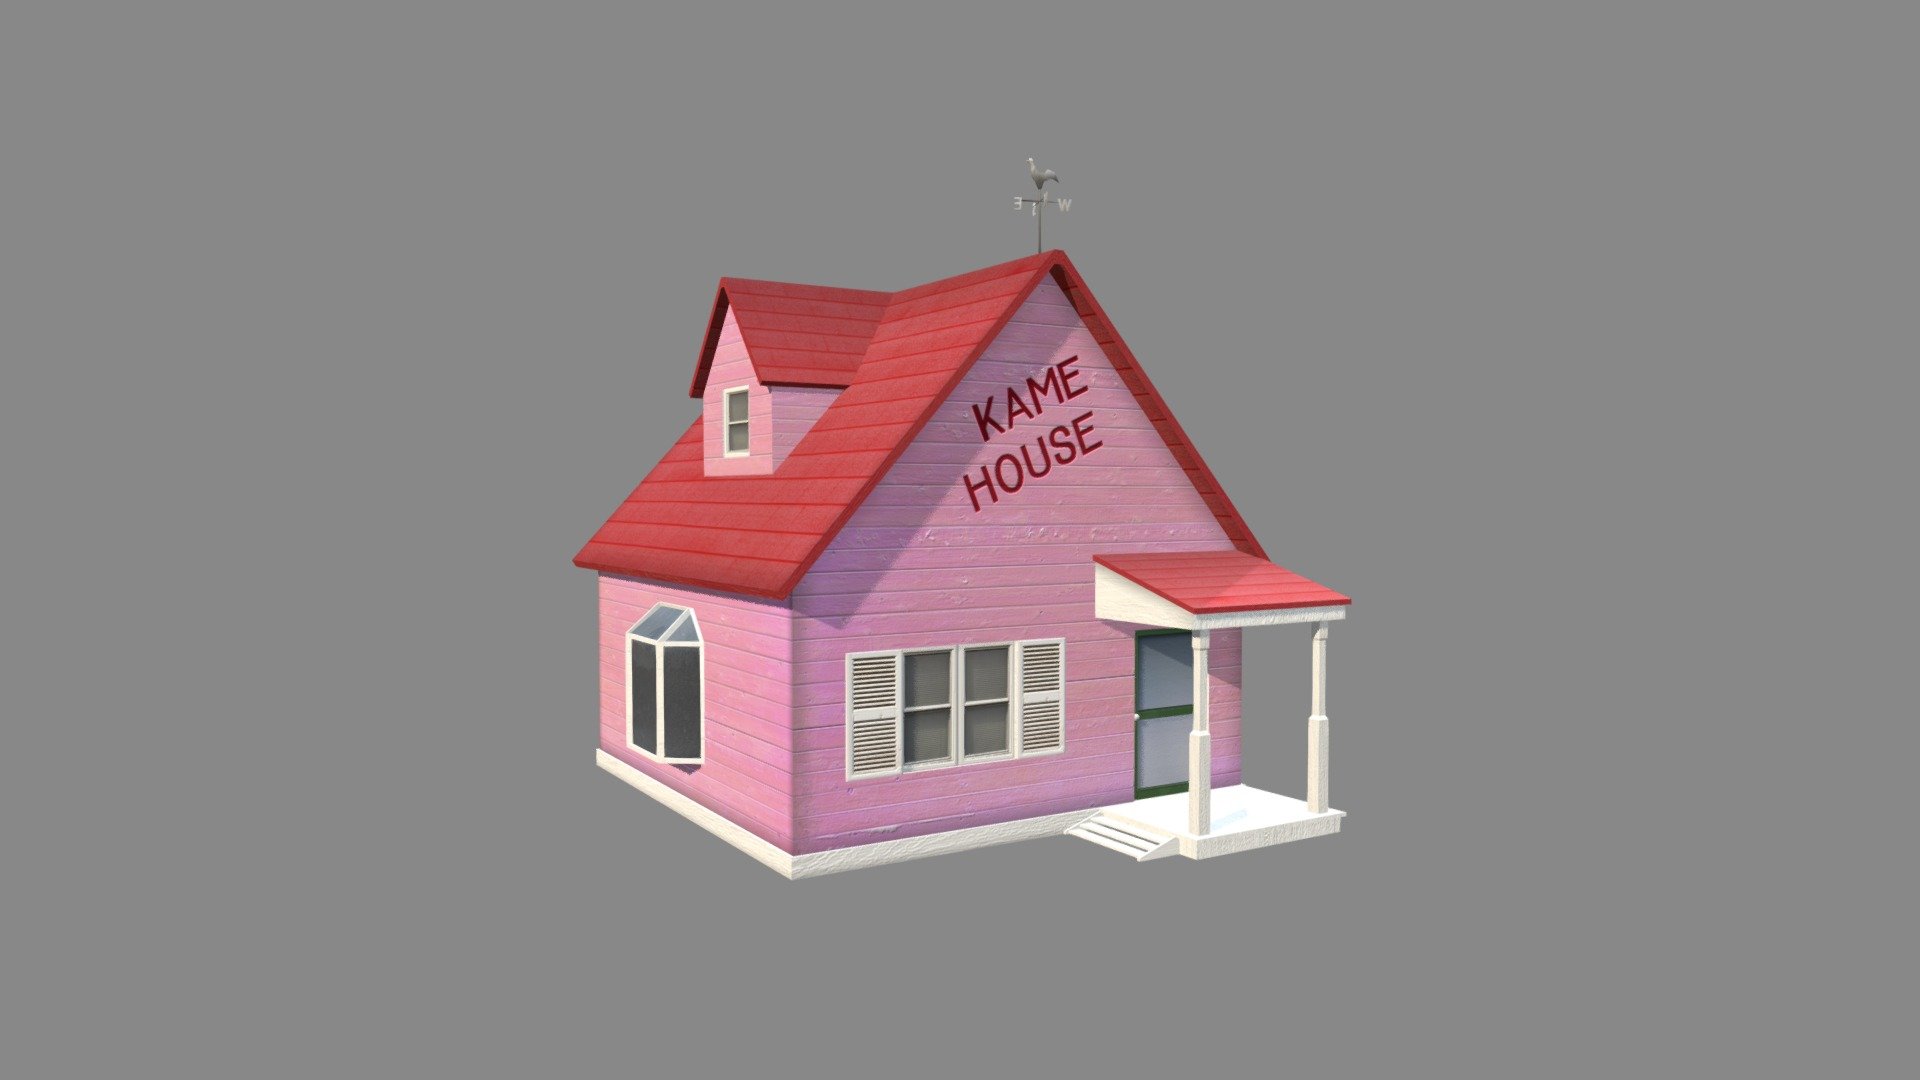 Kame House 3D model by kopskyz (kopskyz) [c836317